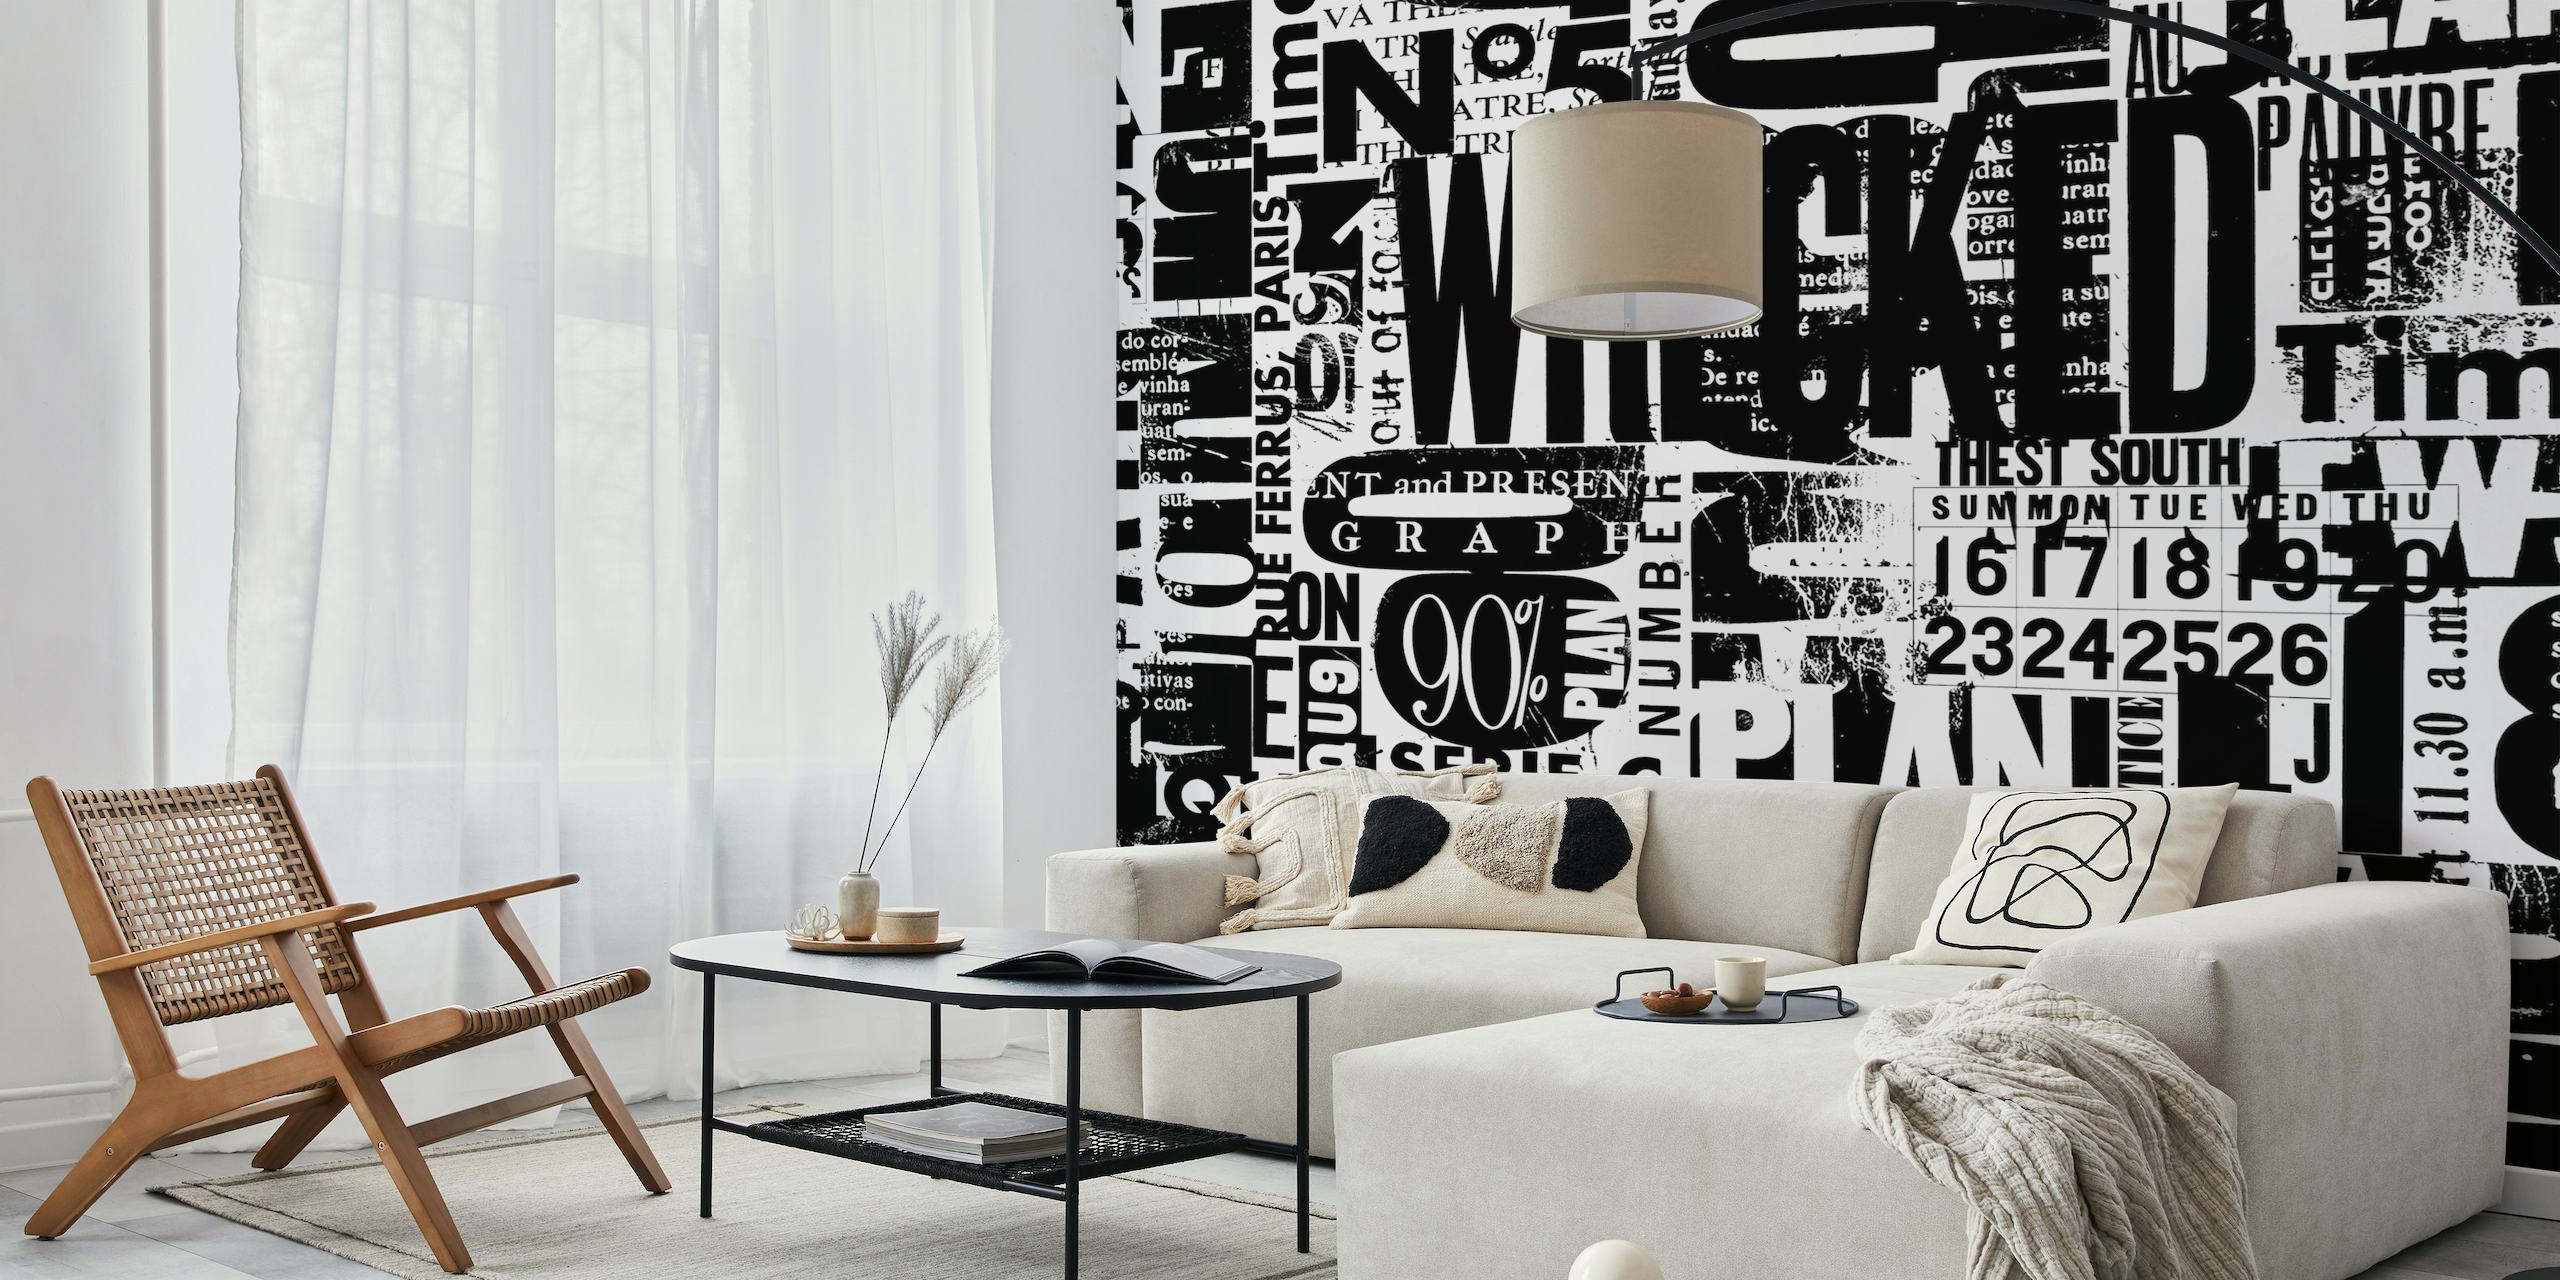 Schwarz-weißes Grunge-Wandbild im urbanen Stil mit einer Collage aus Buchstaben und Zahlen.